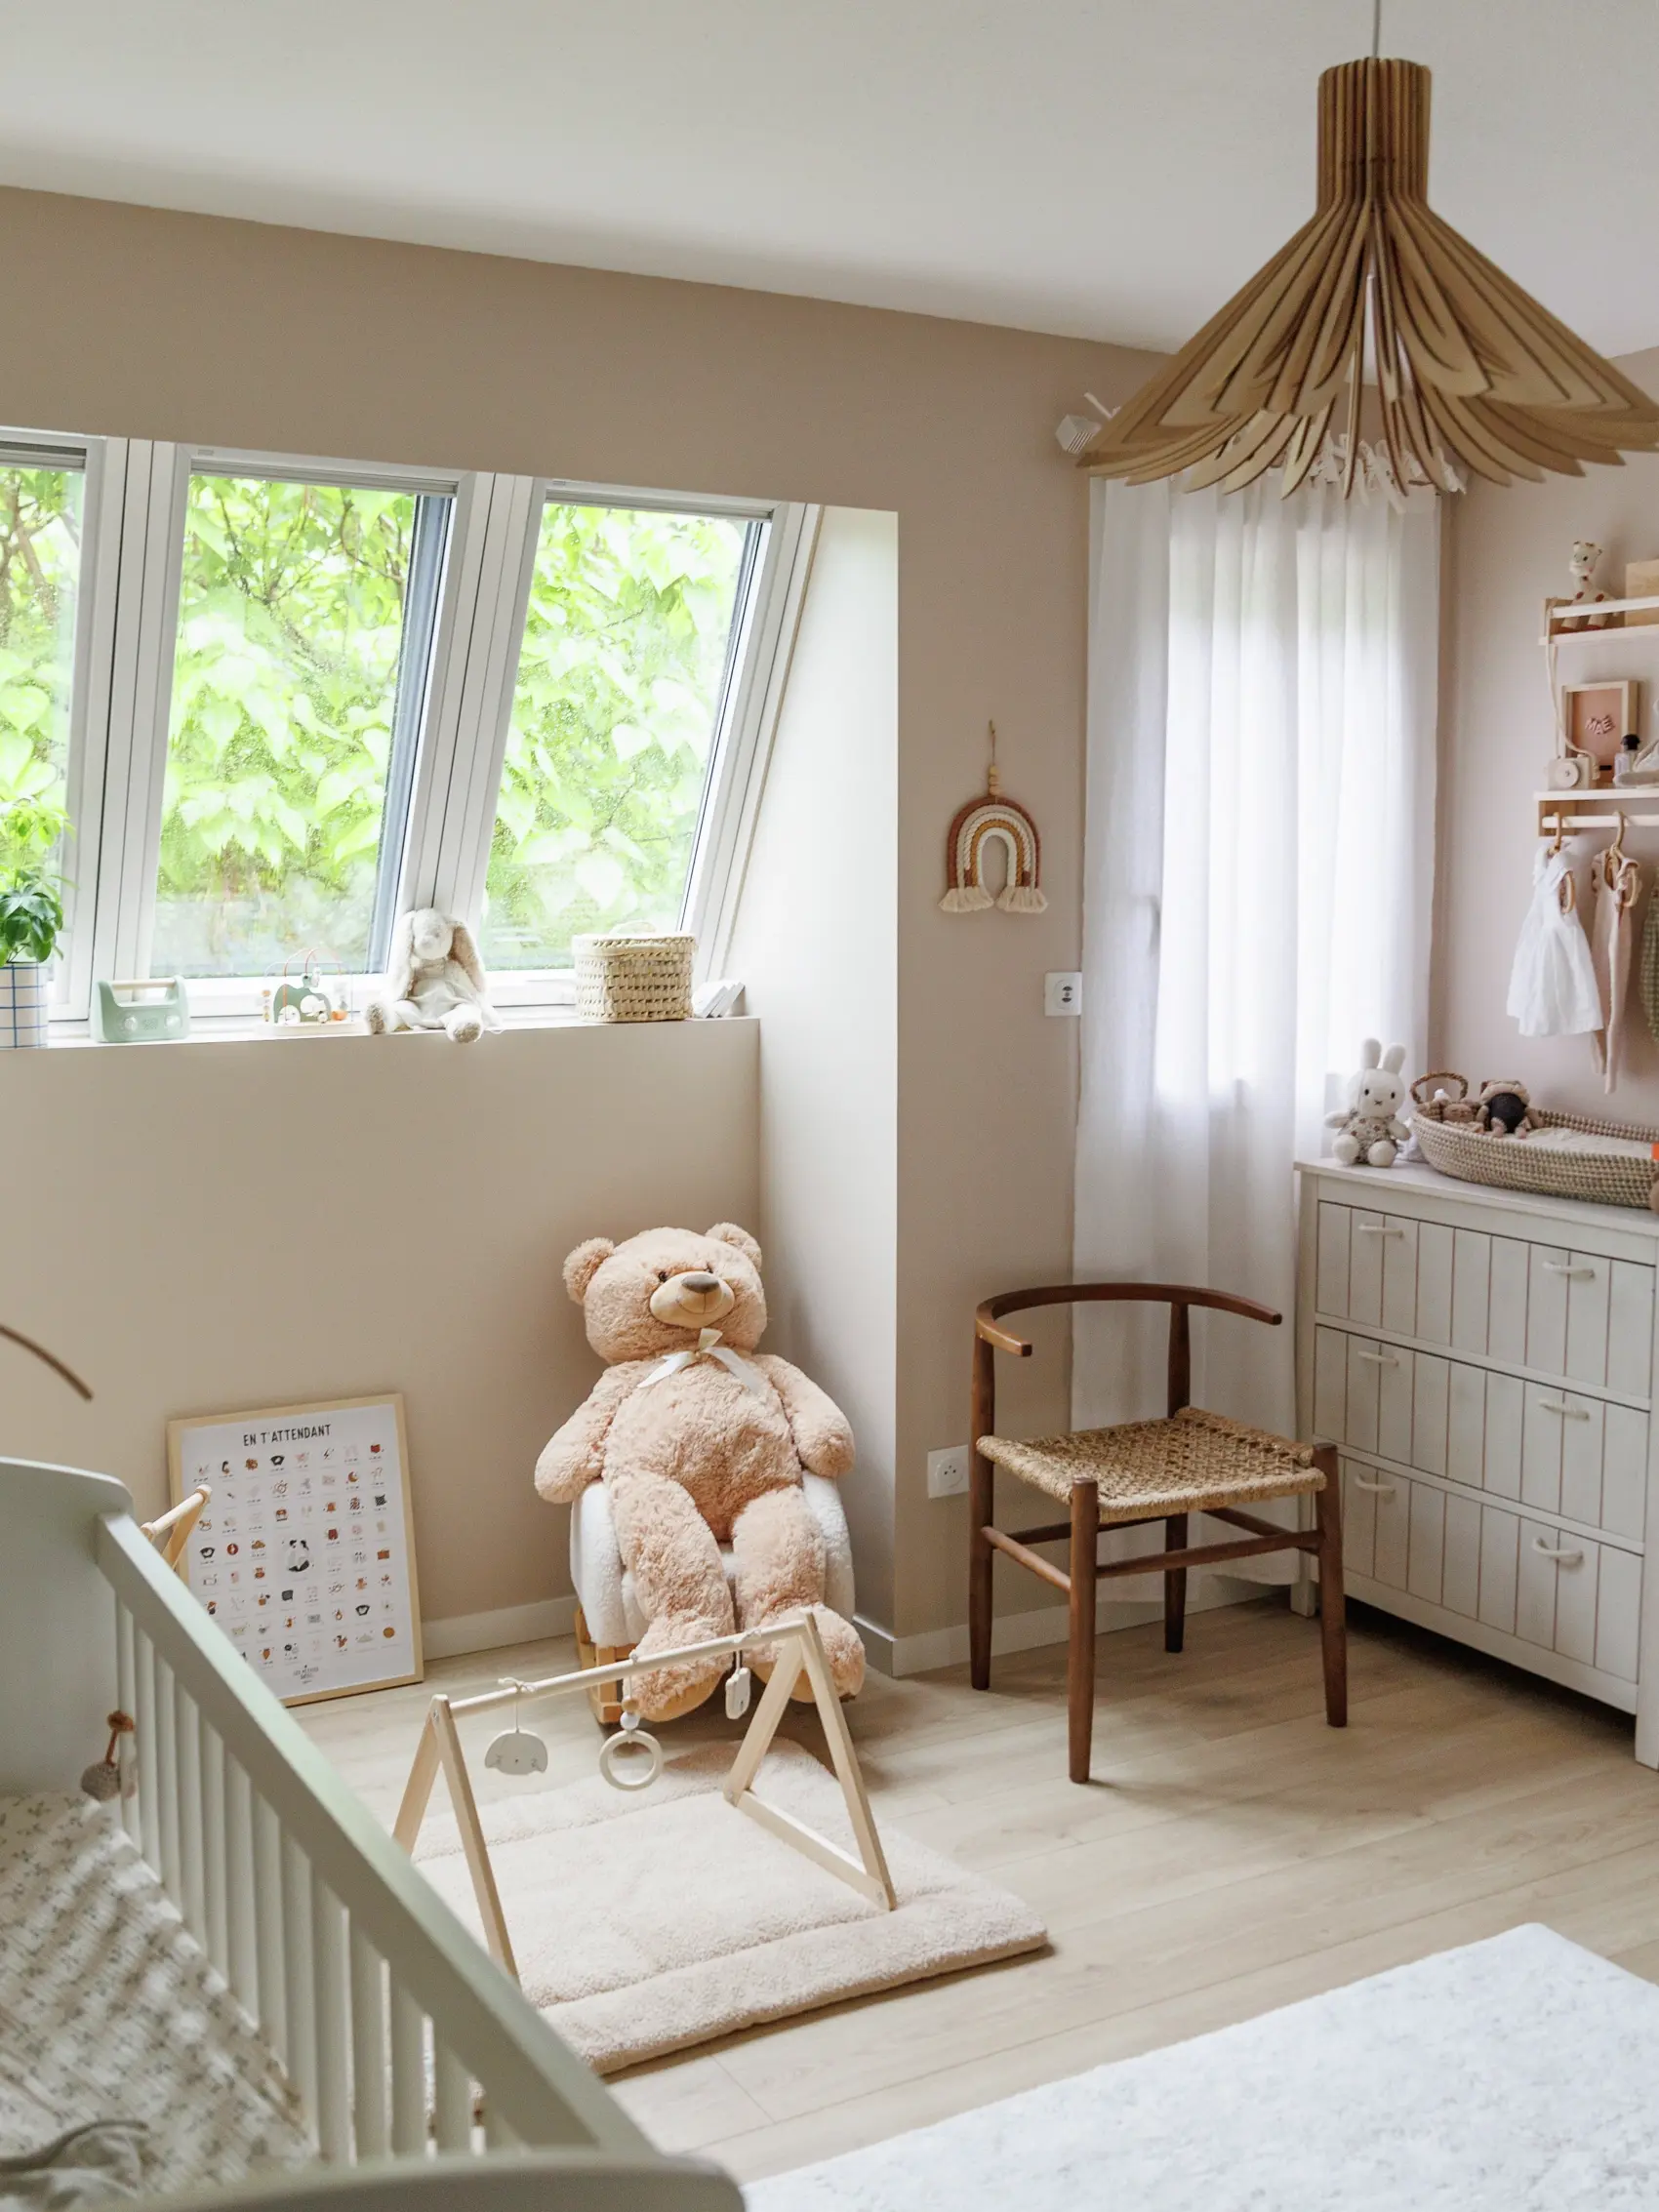 Chambre d'enfants confortable avec un ours en peluche sur une balançoire, décor en bois et une vue sur la verdure à l'extérieur.